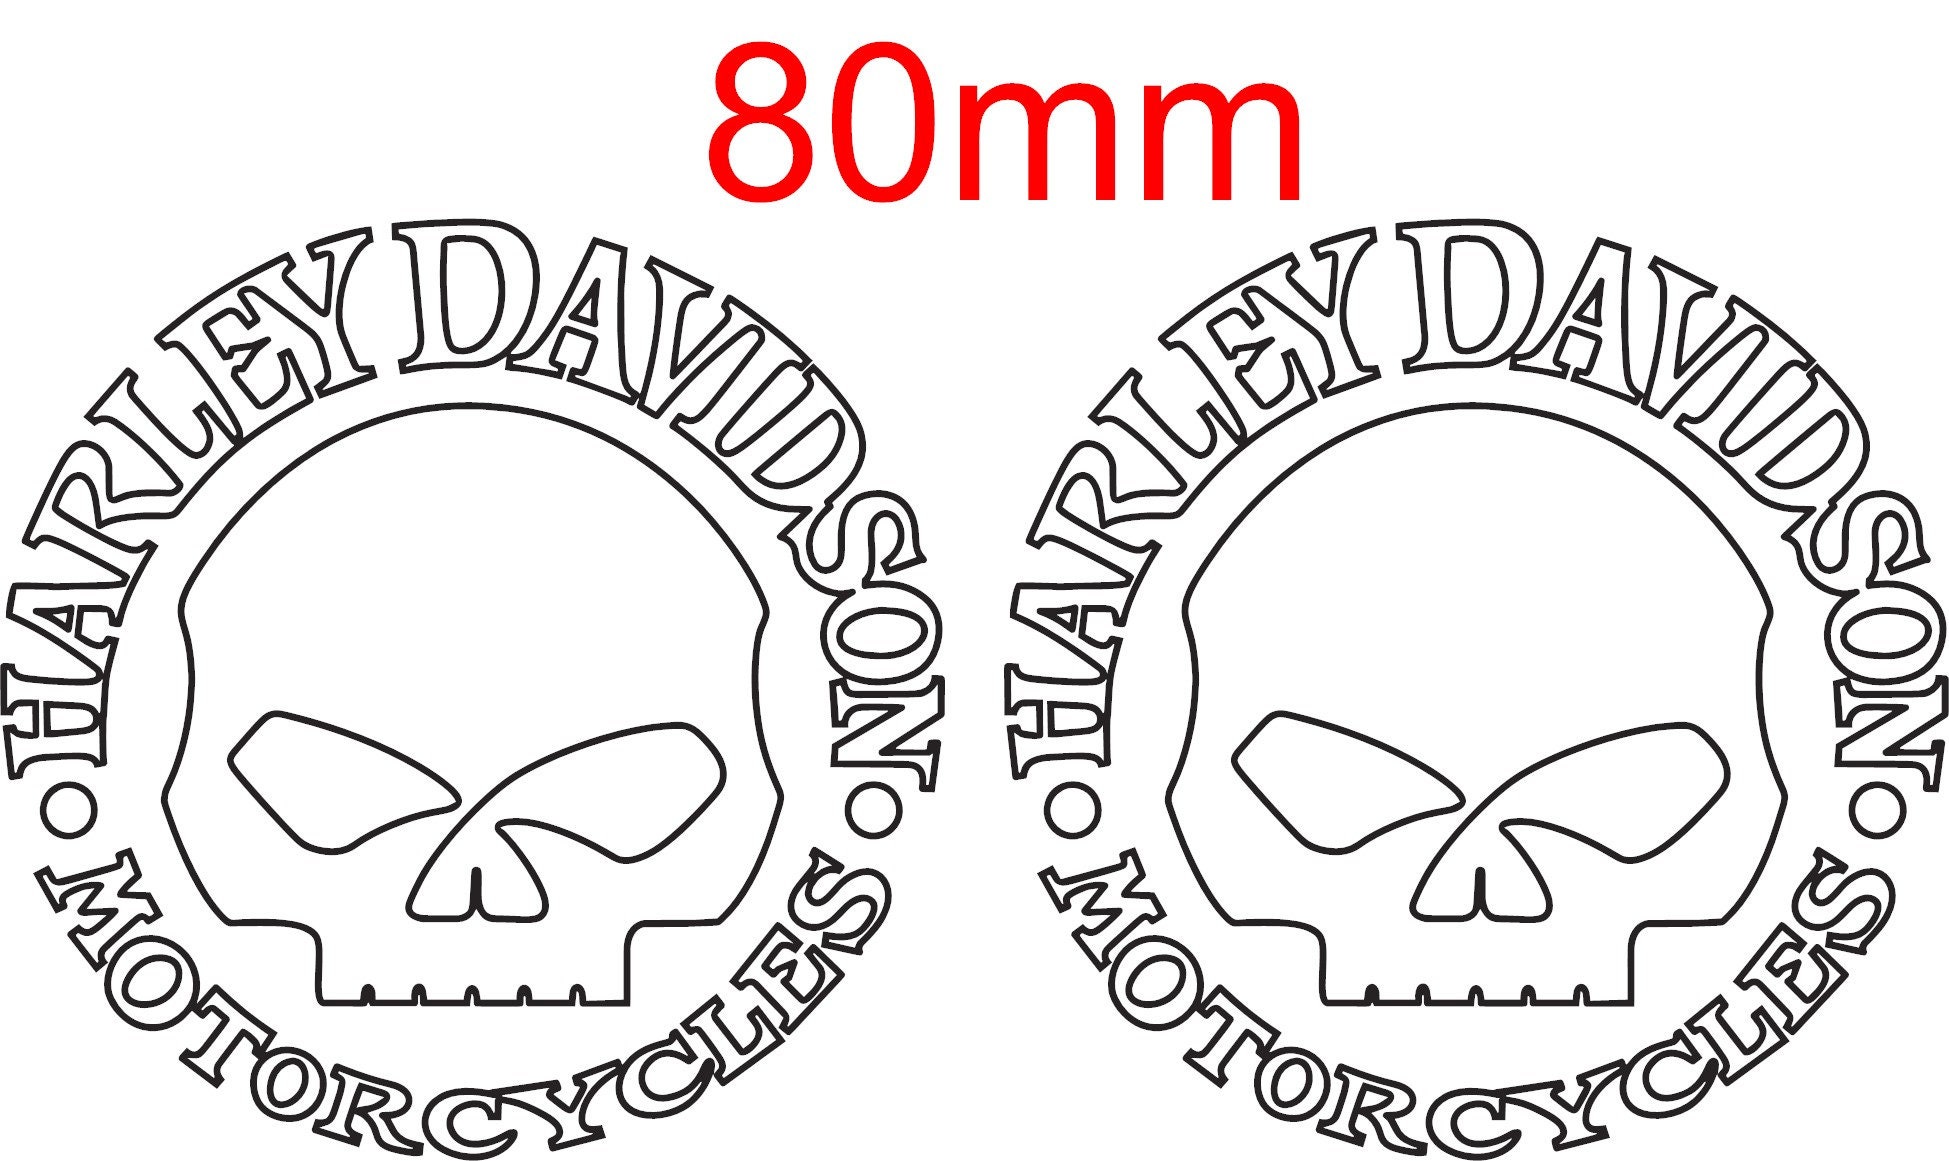 Harley Davidson Sticker Aufkleber - NEU & OVP in Nordrhein-Westfalen -  Moers, Motorradersatz- & Reperaturteile